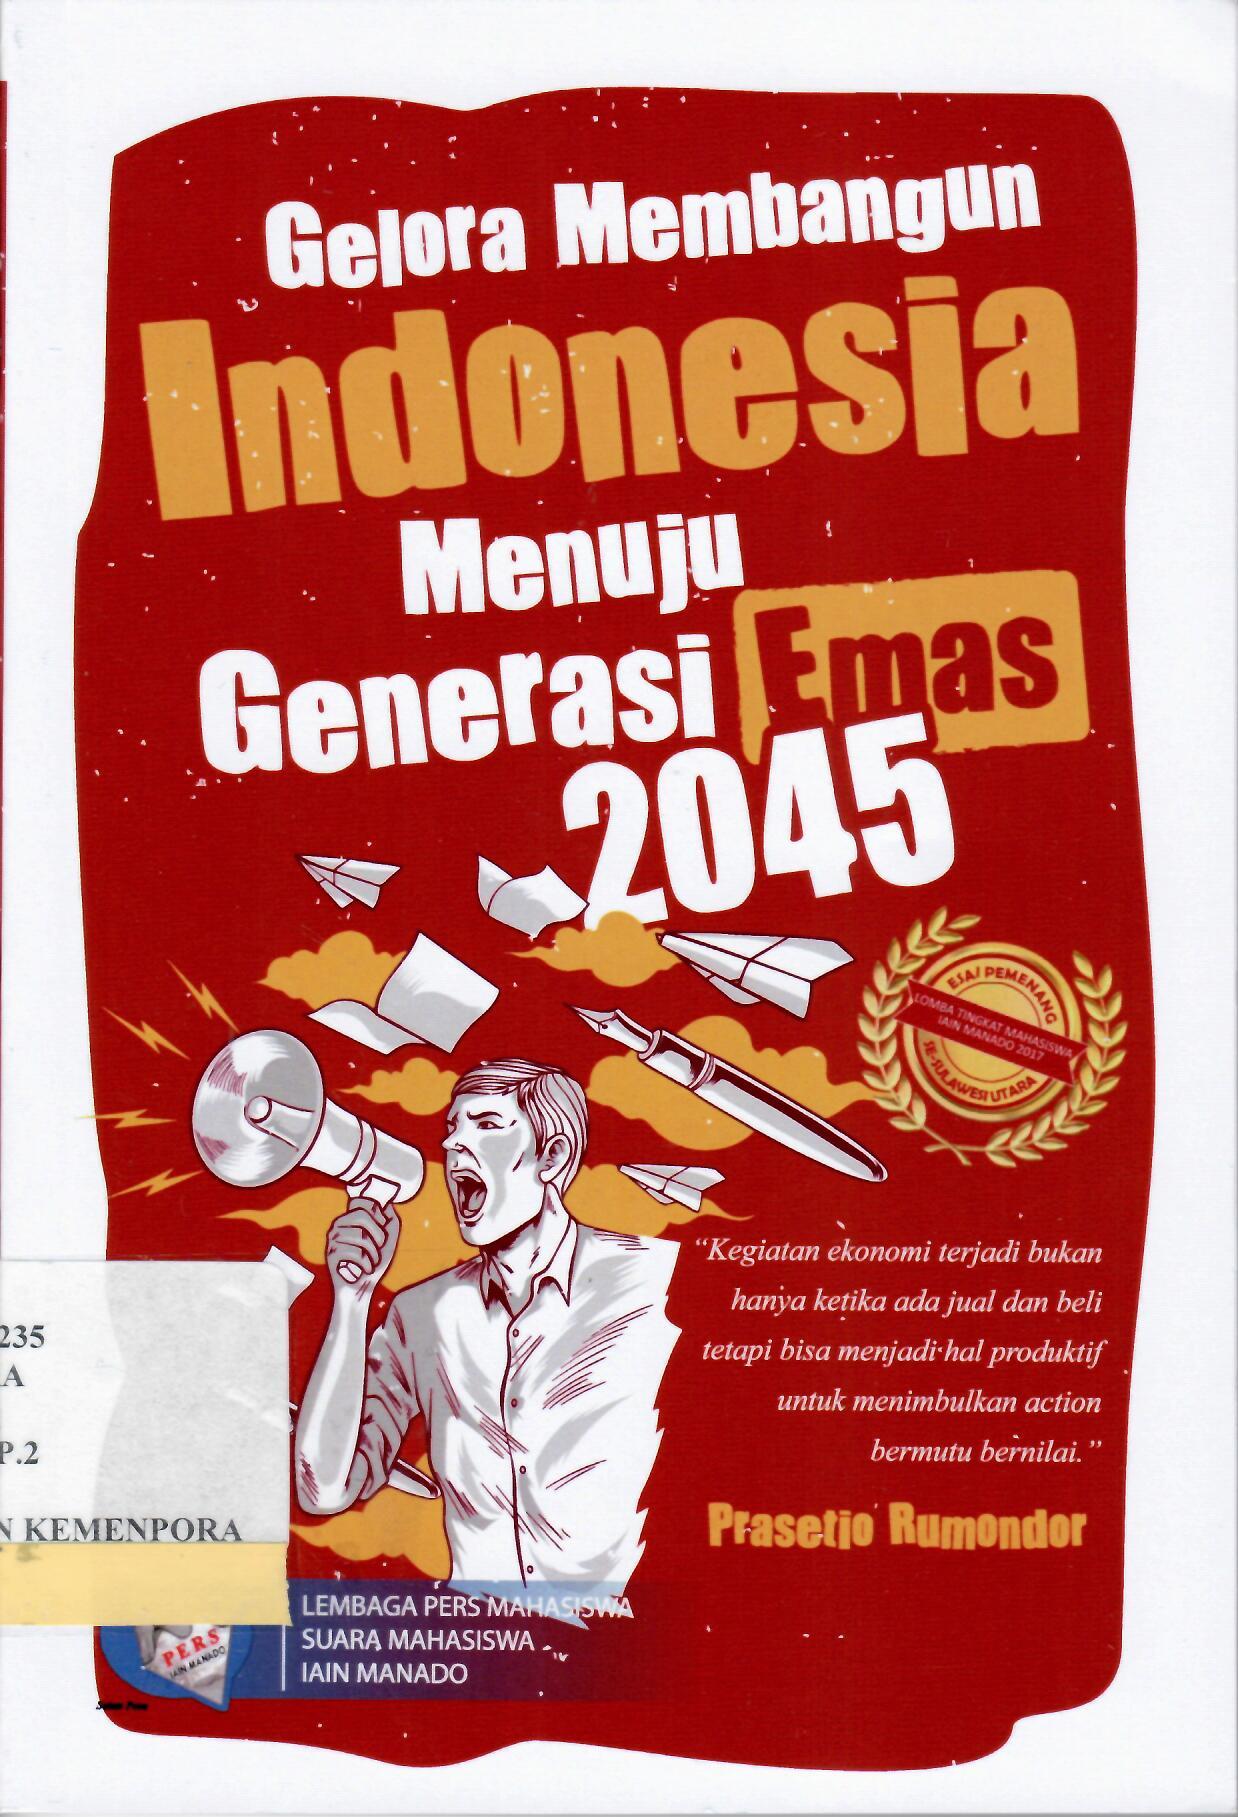 Gelora Membangun Indonesia Menuju Generasi Emas 2045